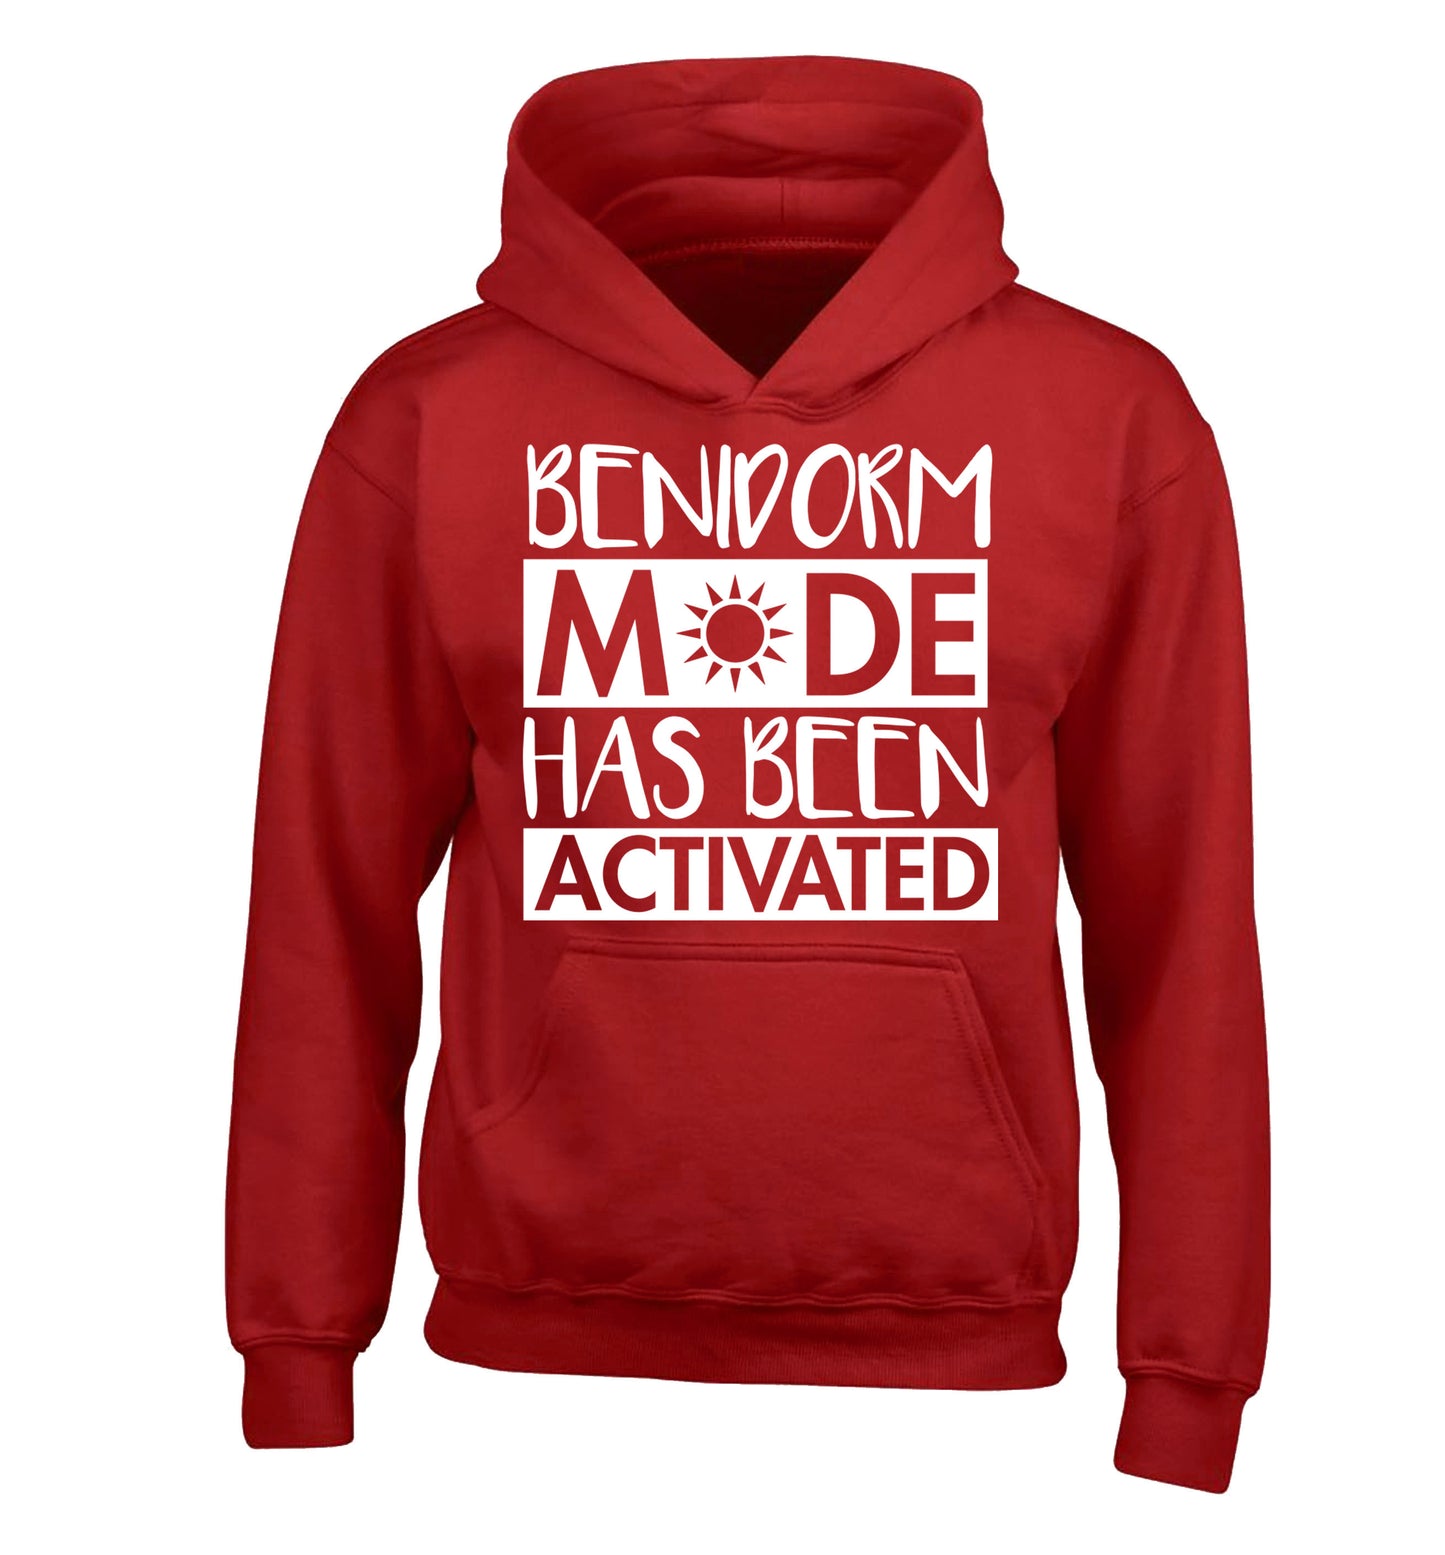 Benidorm mode has been activated children's red hoodie 12-14 Years